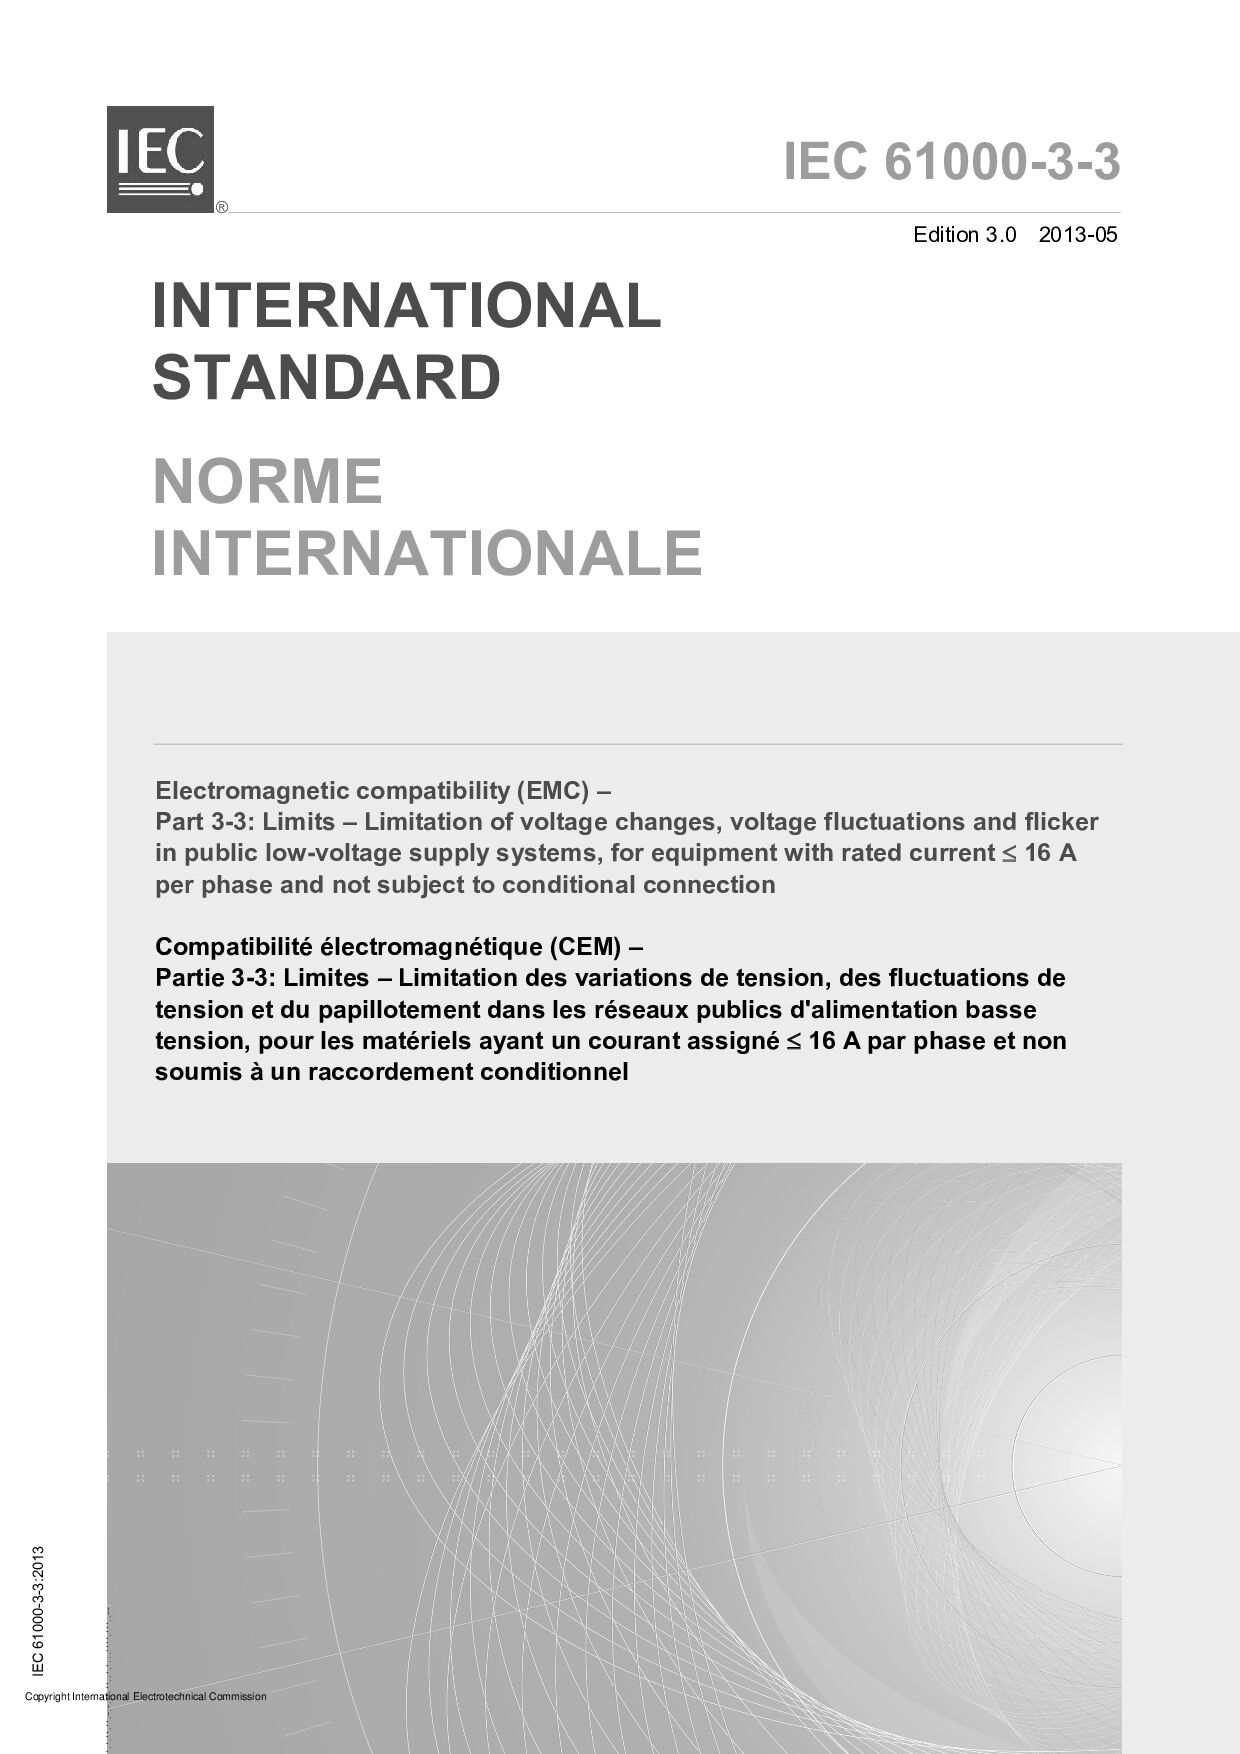 IEC 61000-3-3:2013封面图